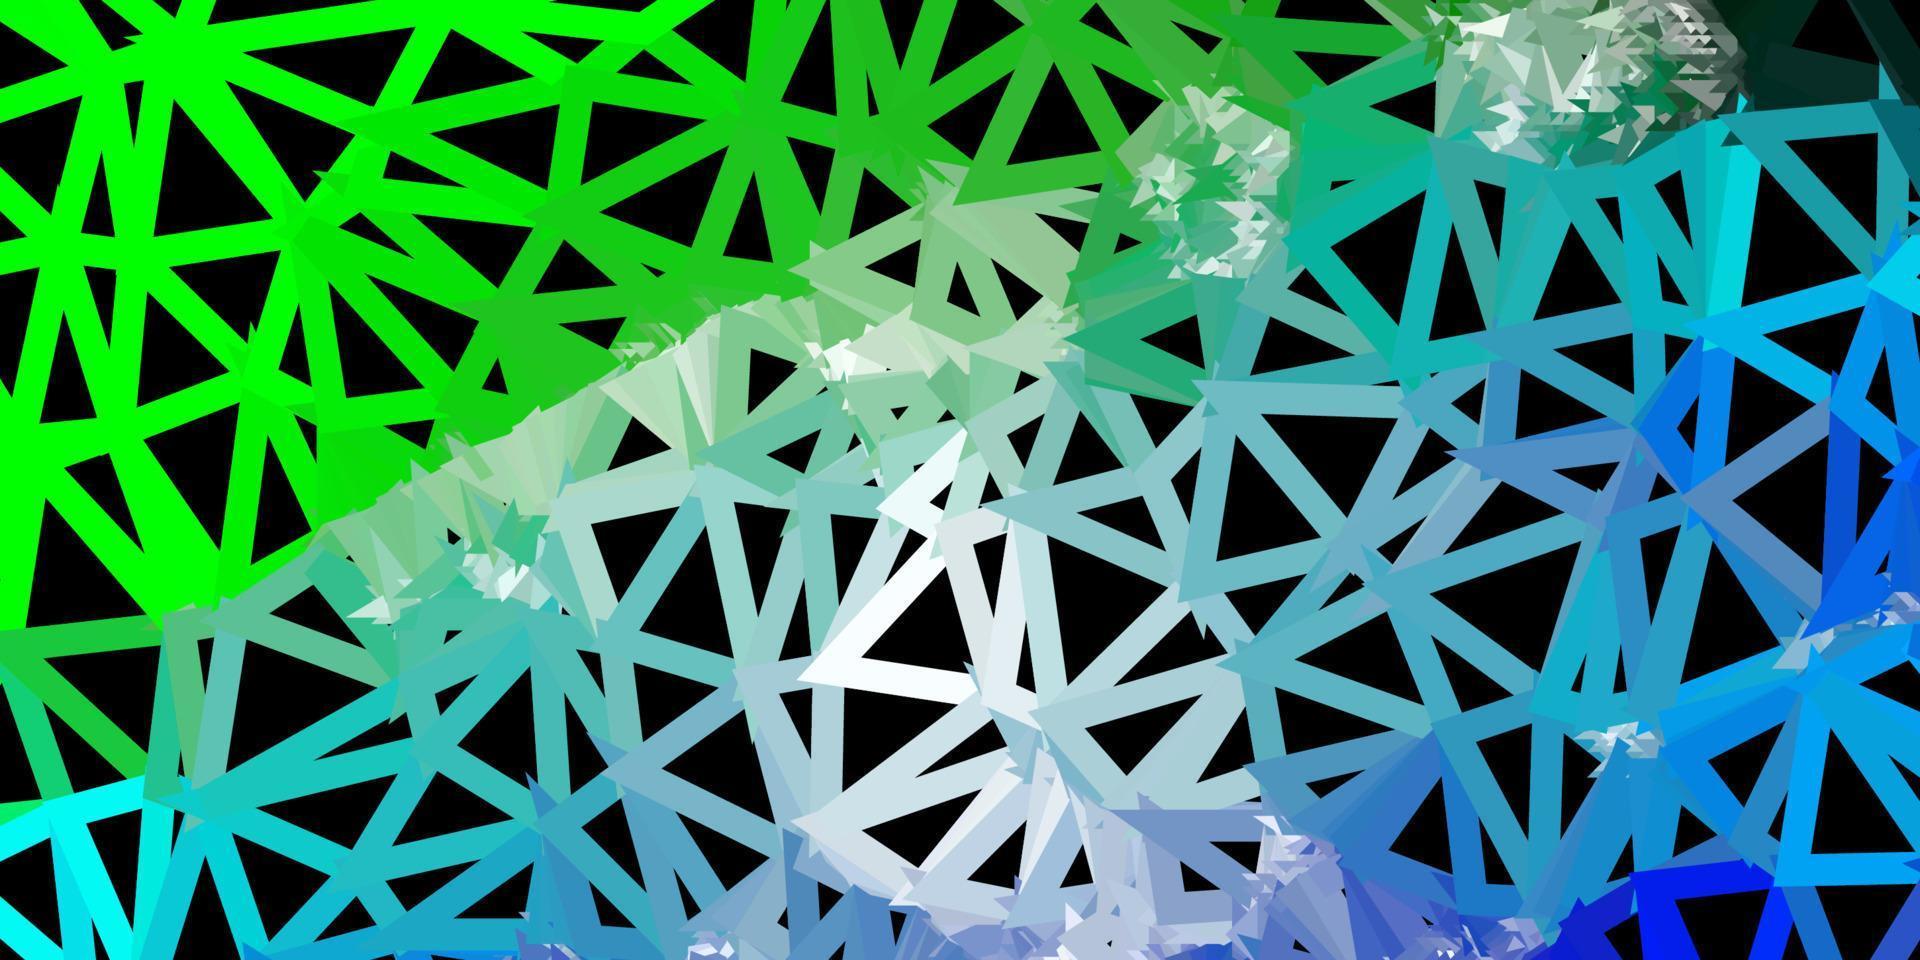 Telón de fondo poligonal de vector azul claro, verde.